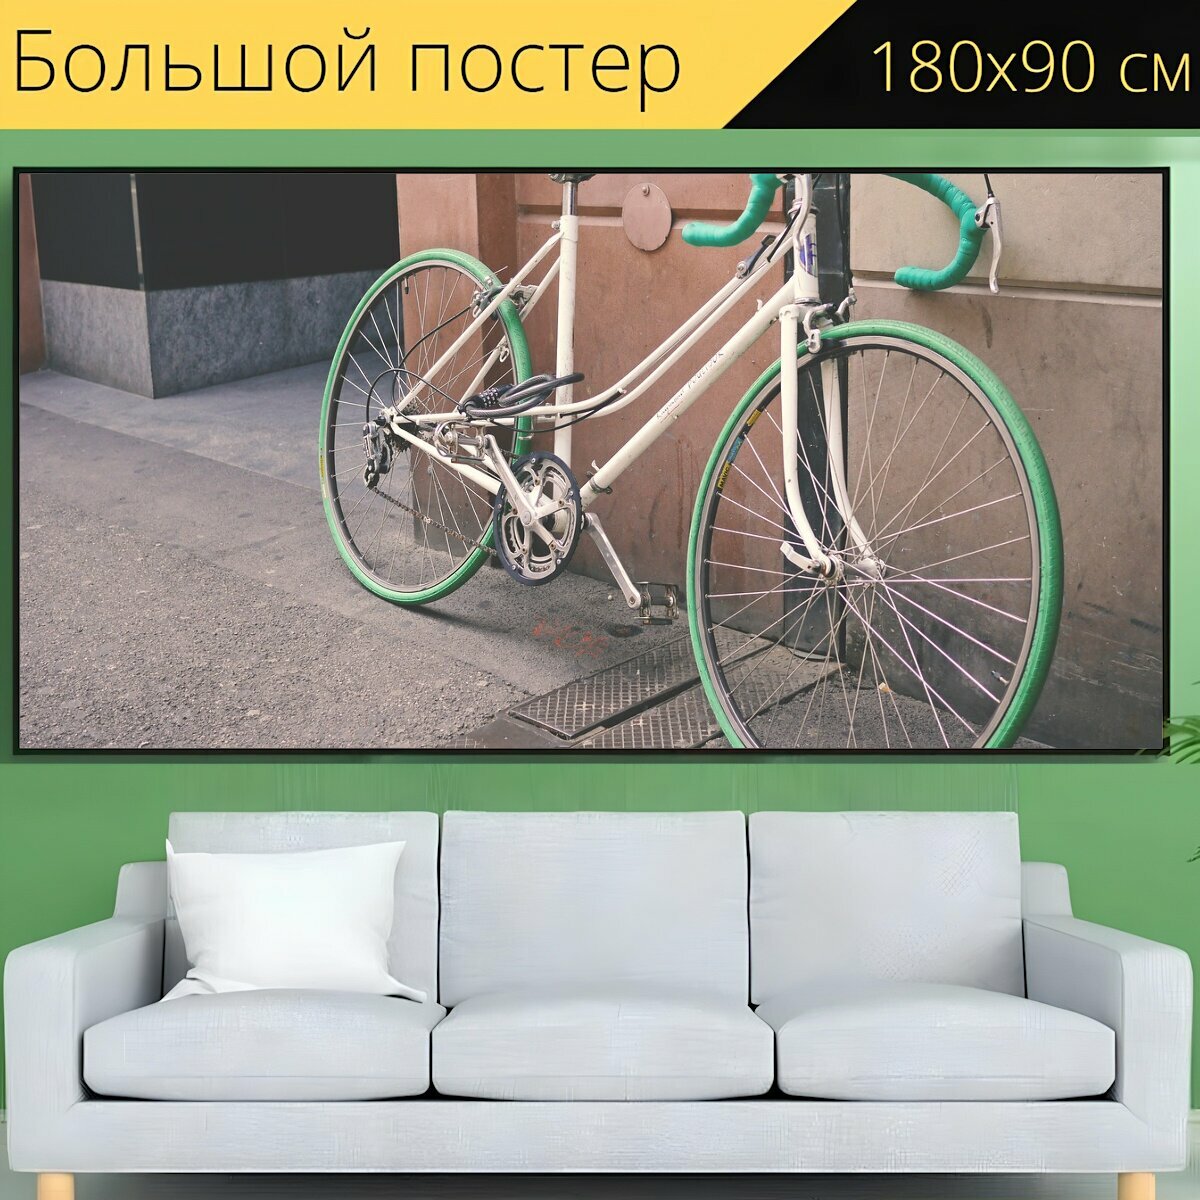 Большой постер "Велосипед, стена, улица" 180 x 90 см. для интерьера